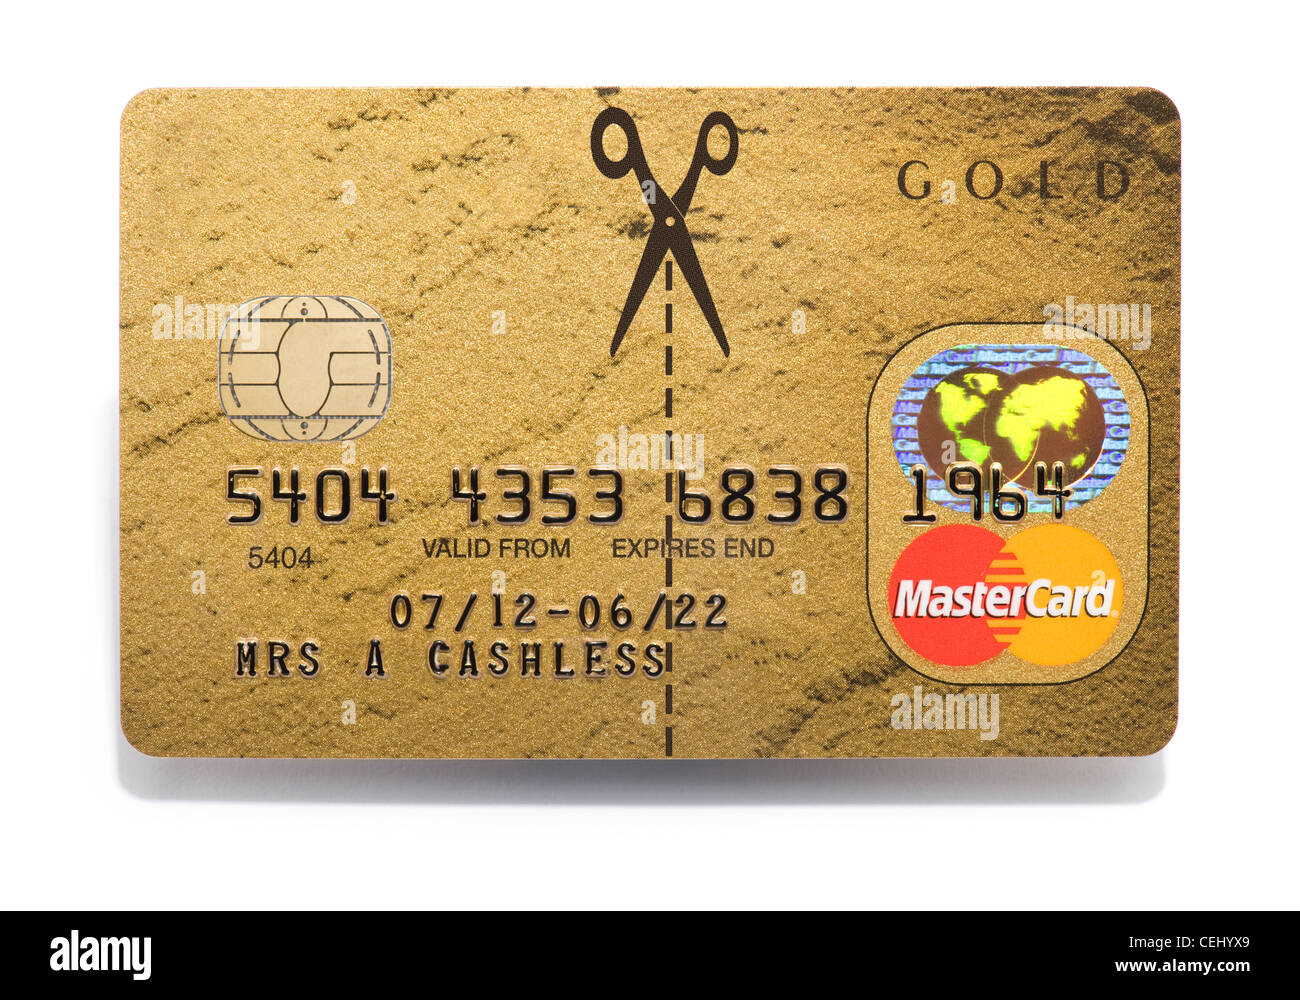 Tijeras de corte de una tarjeta de crédito MasterCard Foto de stock